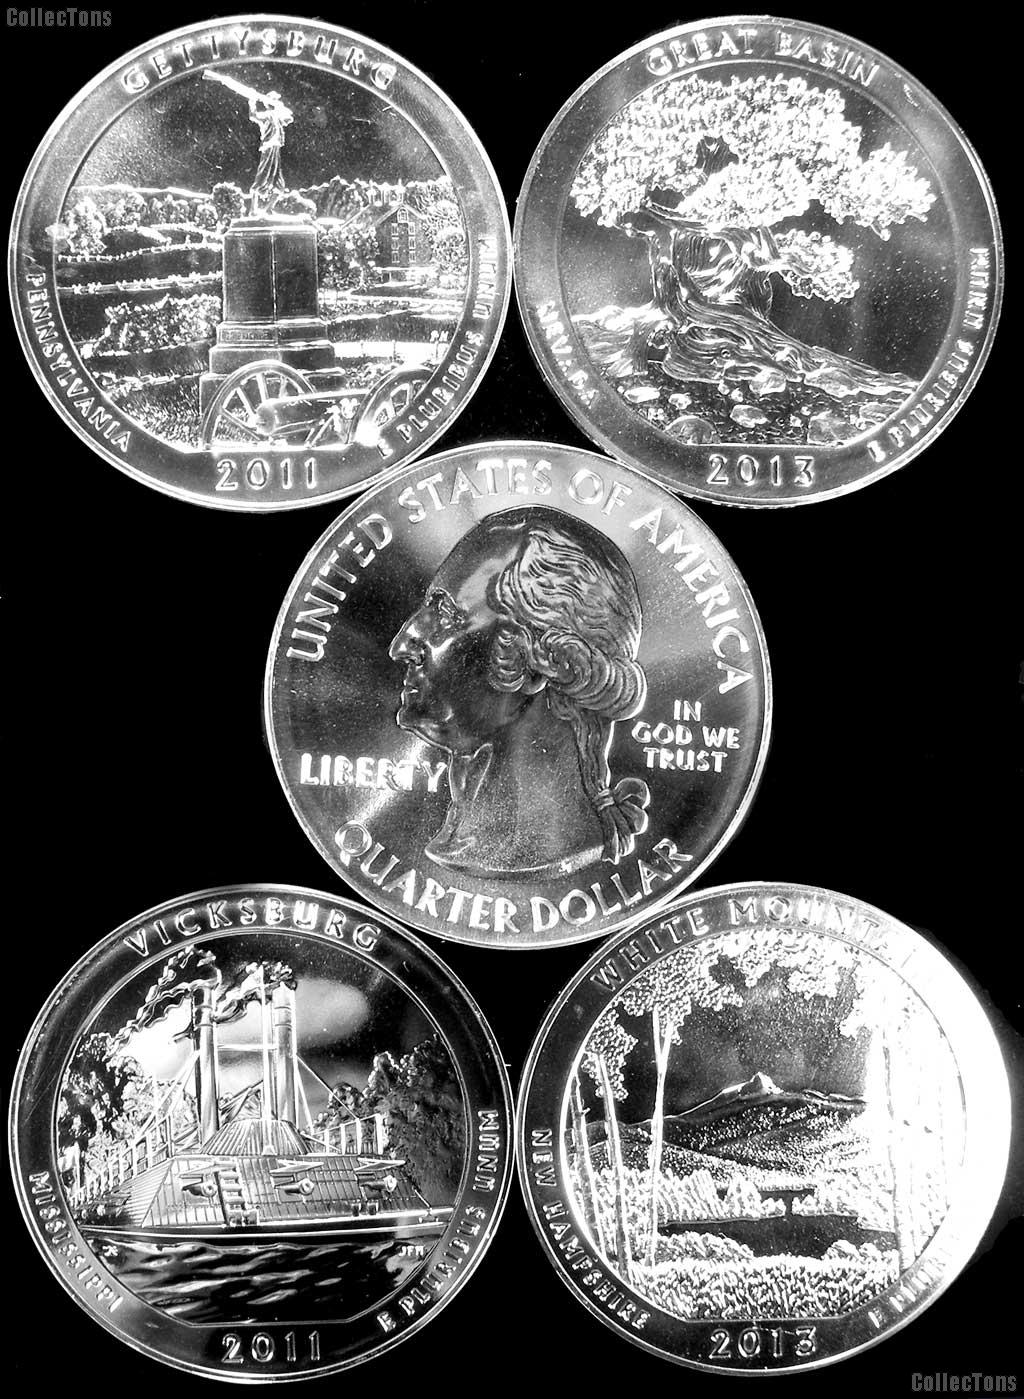 5 Oz Silver National Park ATB Coins - Mixed Dates